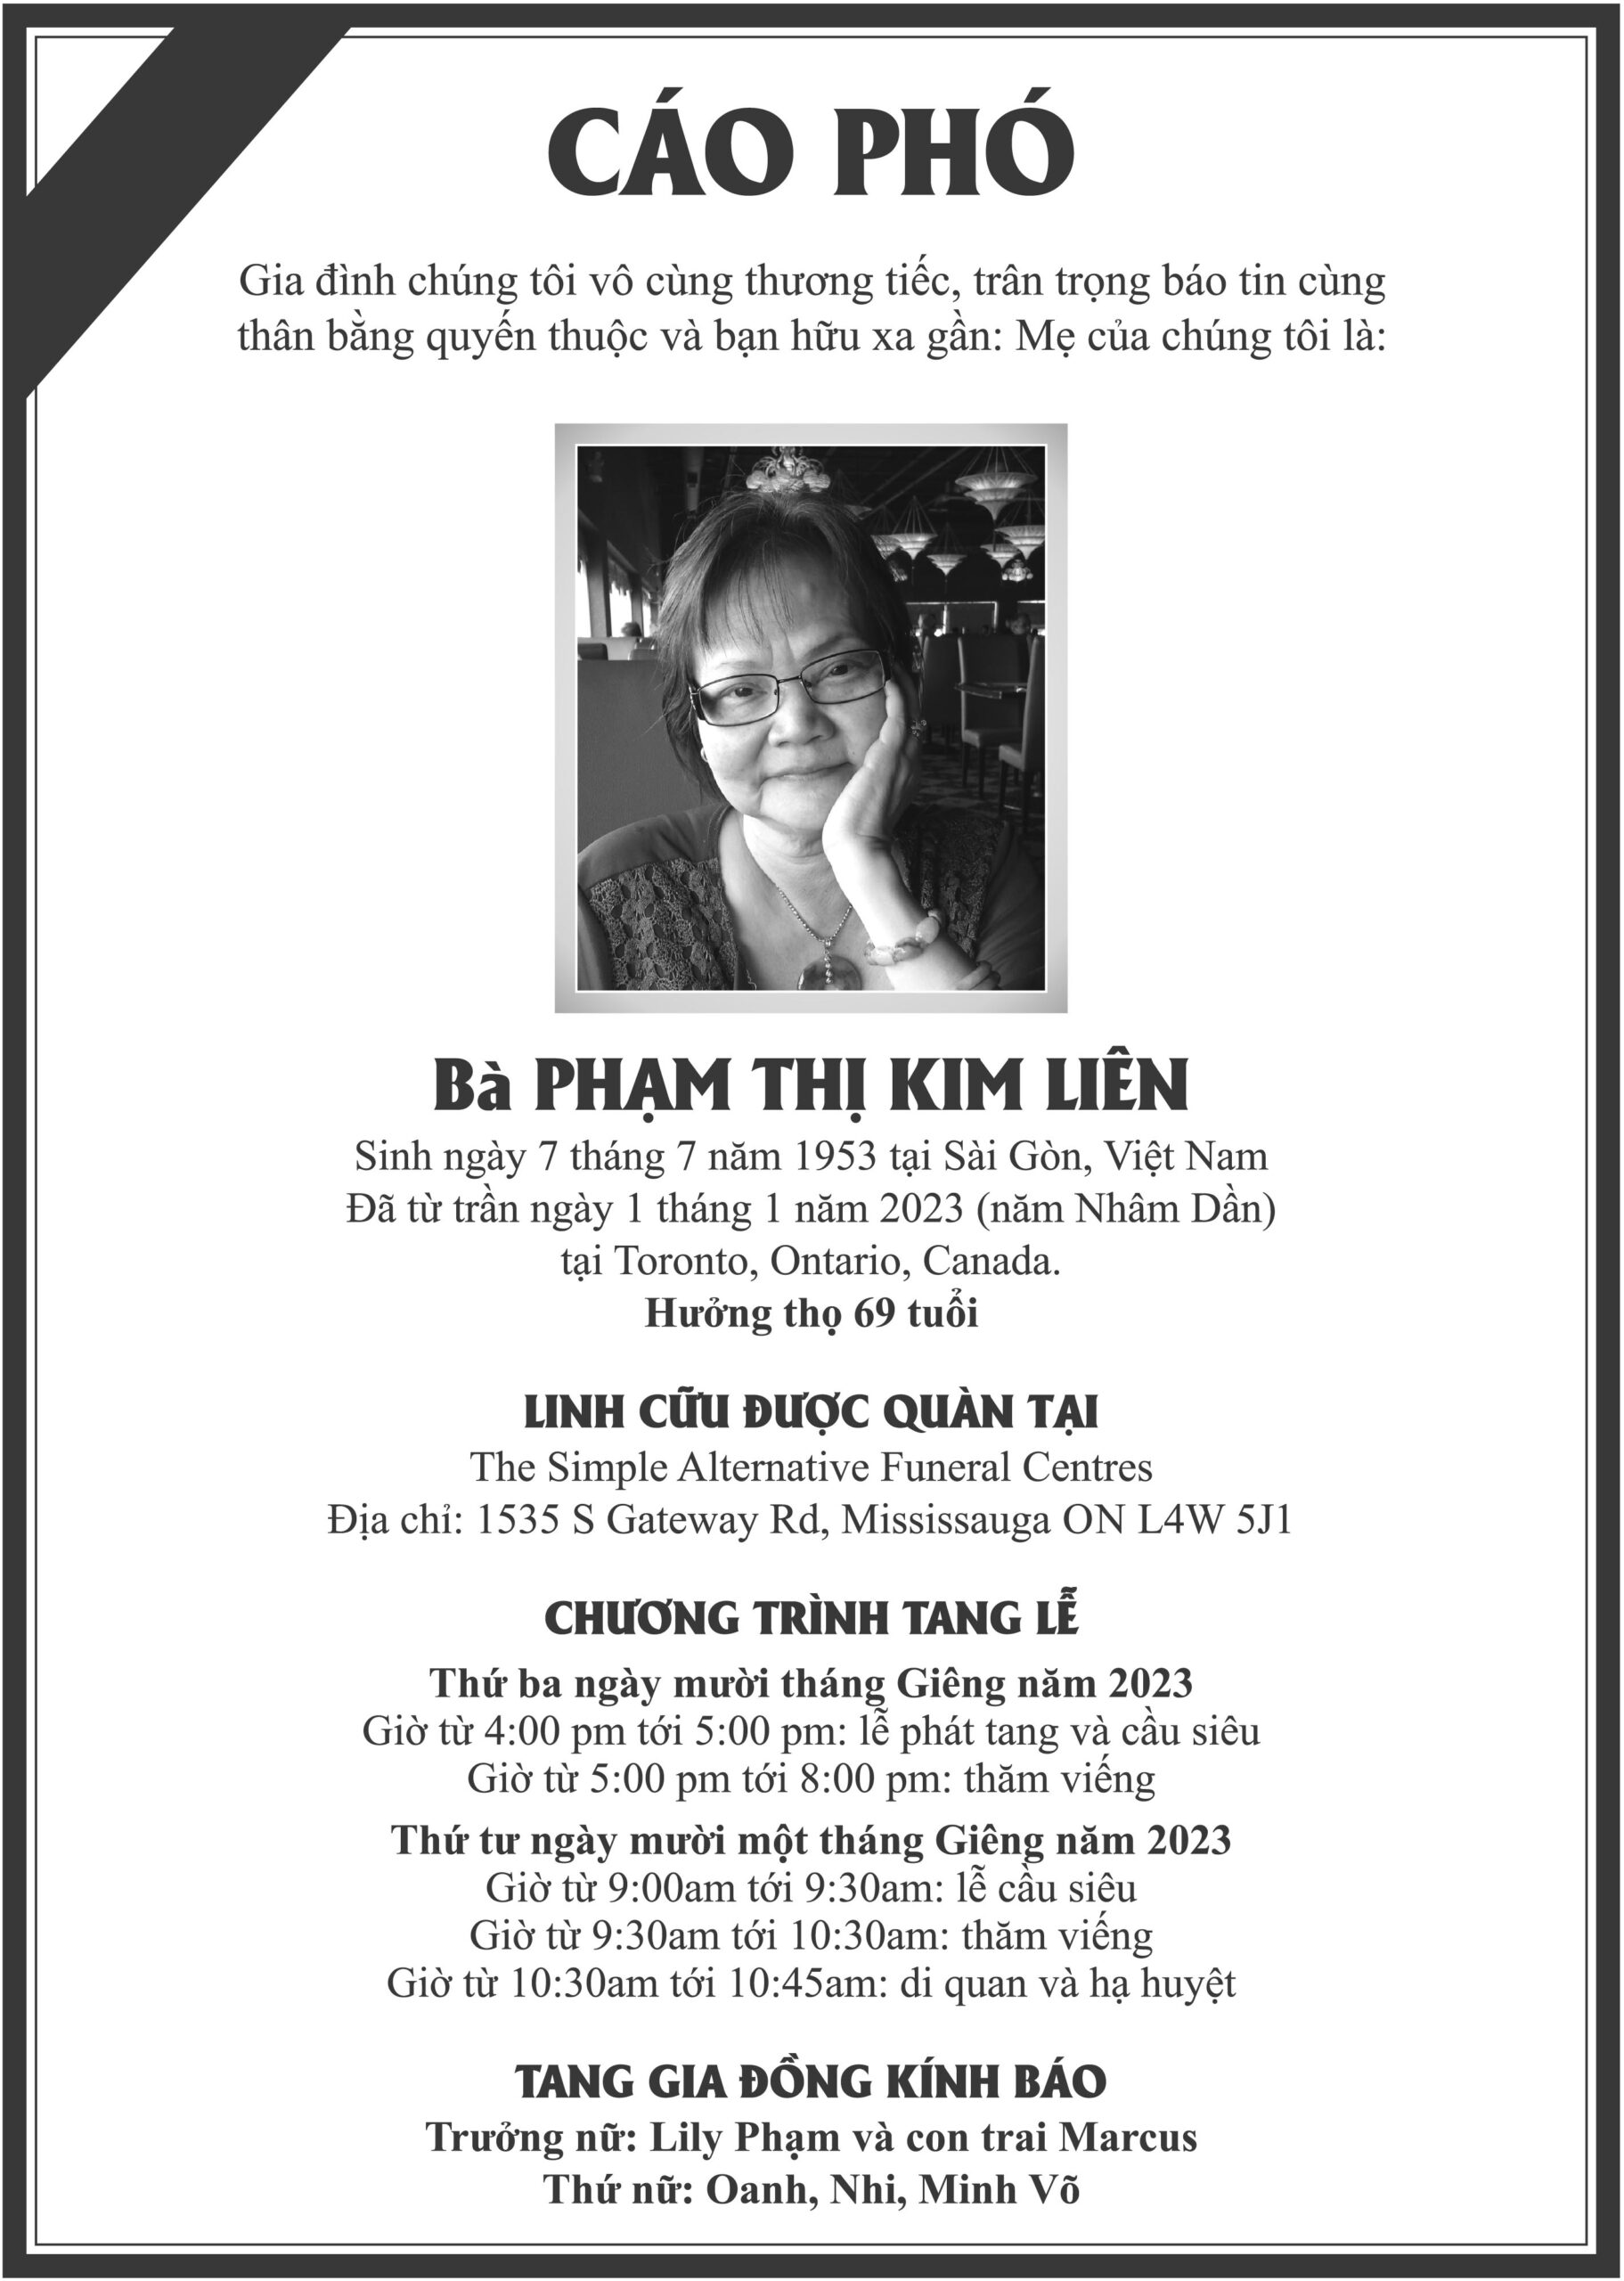 CP Pham Thi Kim Lien